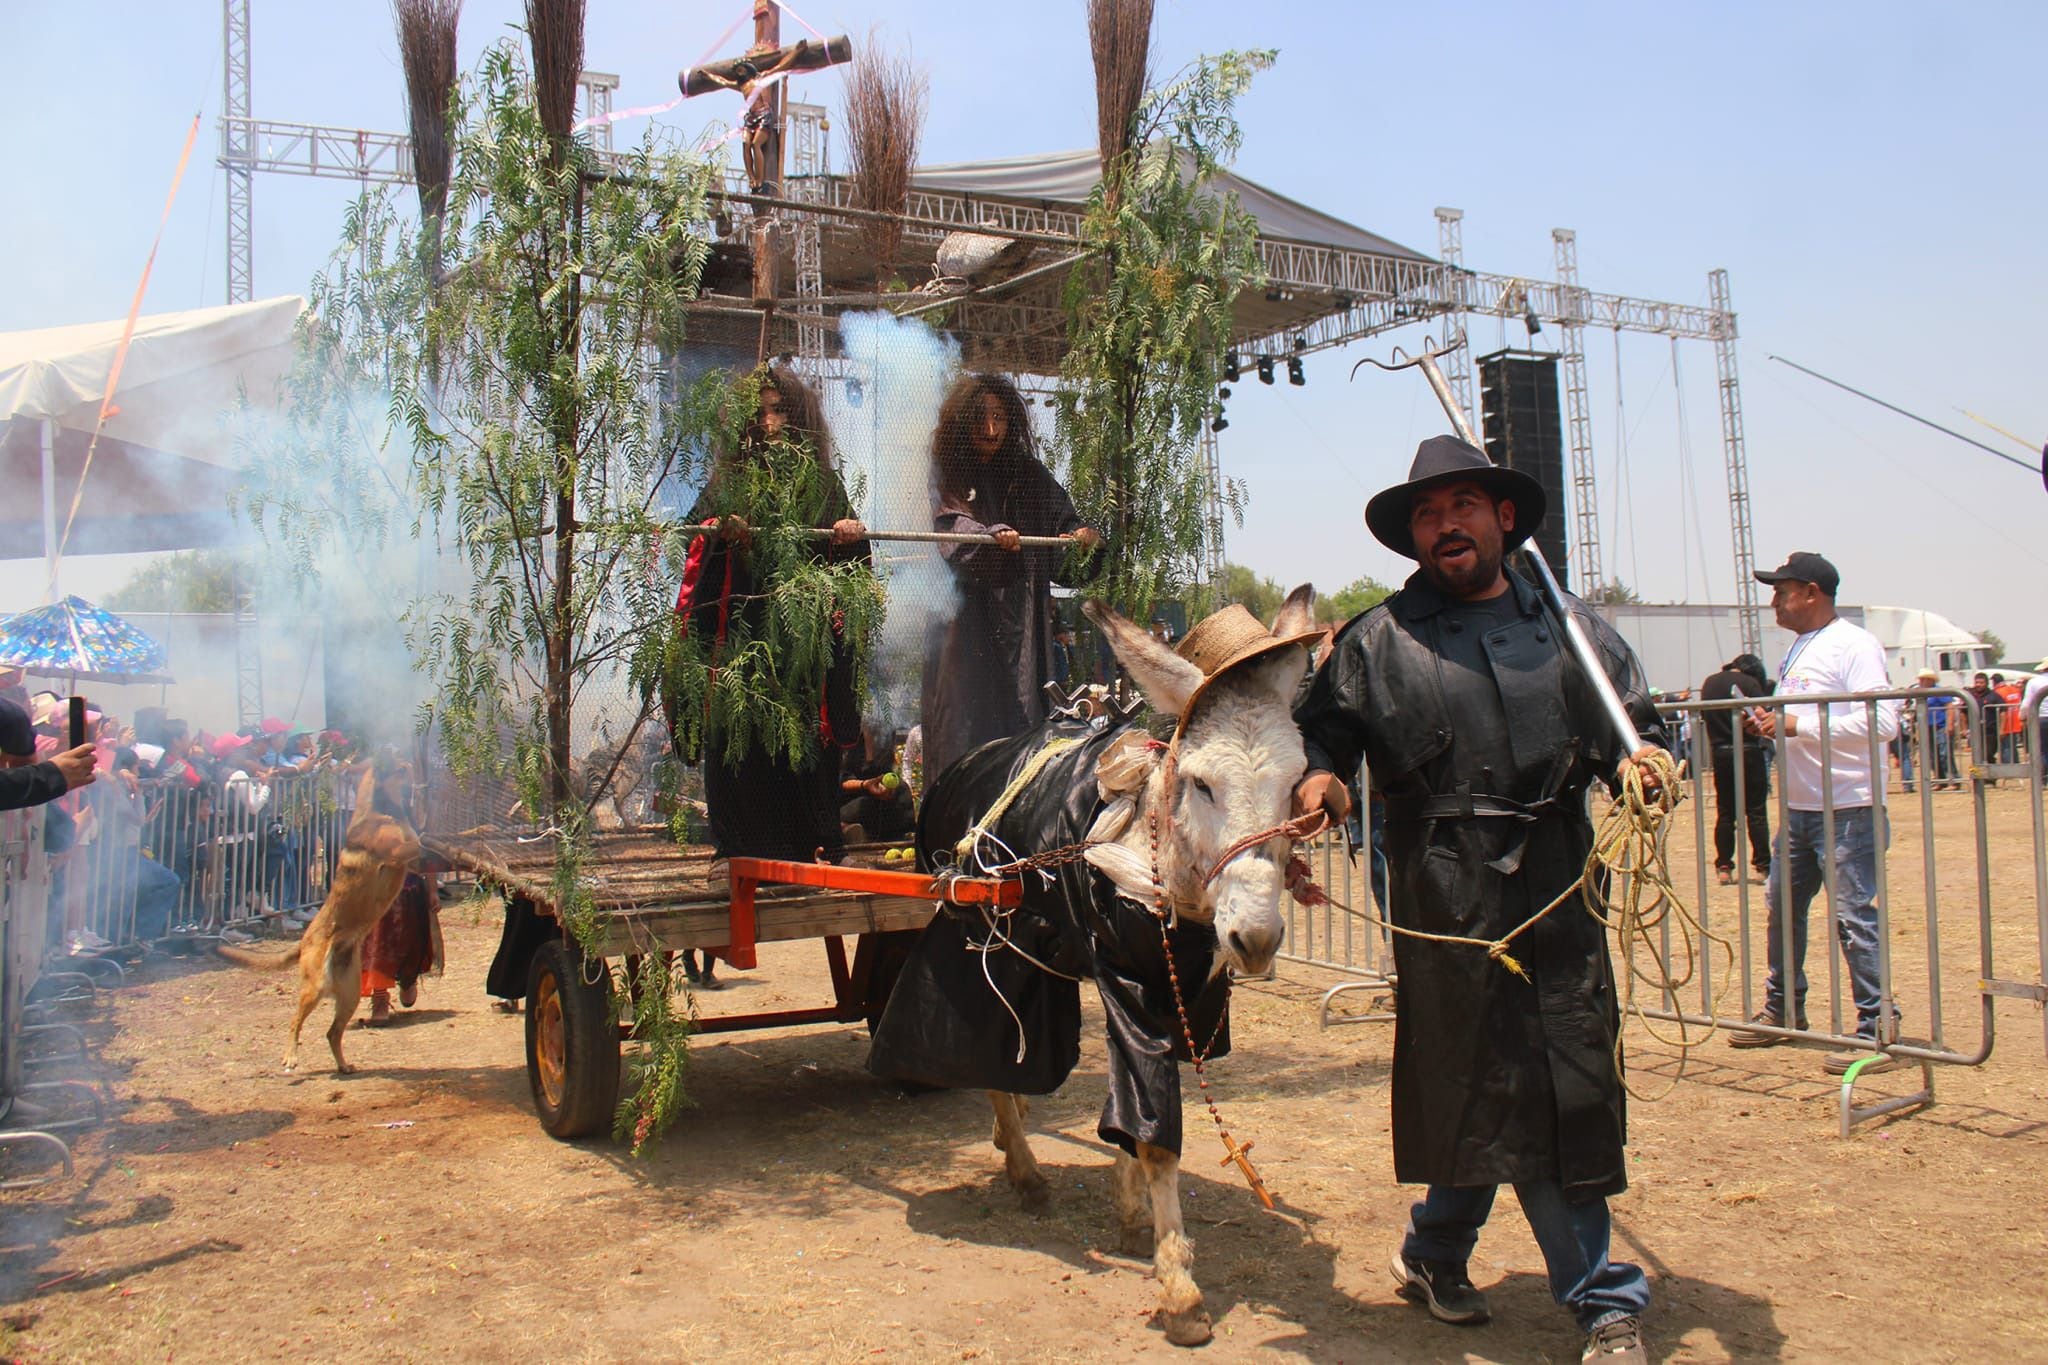 El "cazador de brujas" causó conmoción entre todos los visitantes del evento. (Facebook/Feria Nacional del Burro Otumba 2024)

Burros, equinos, feria nacional del burro 2024, Otumba, México, disfraces, polo, animales, mascotas